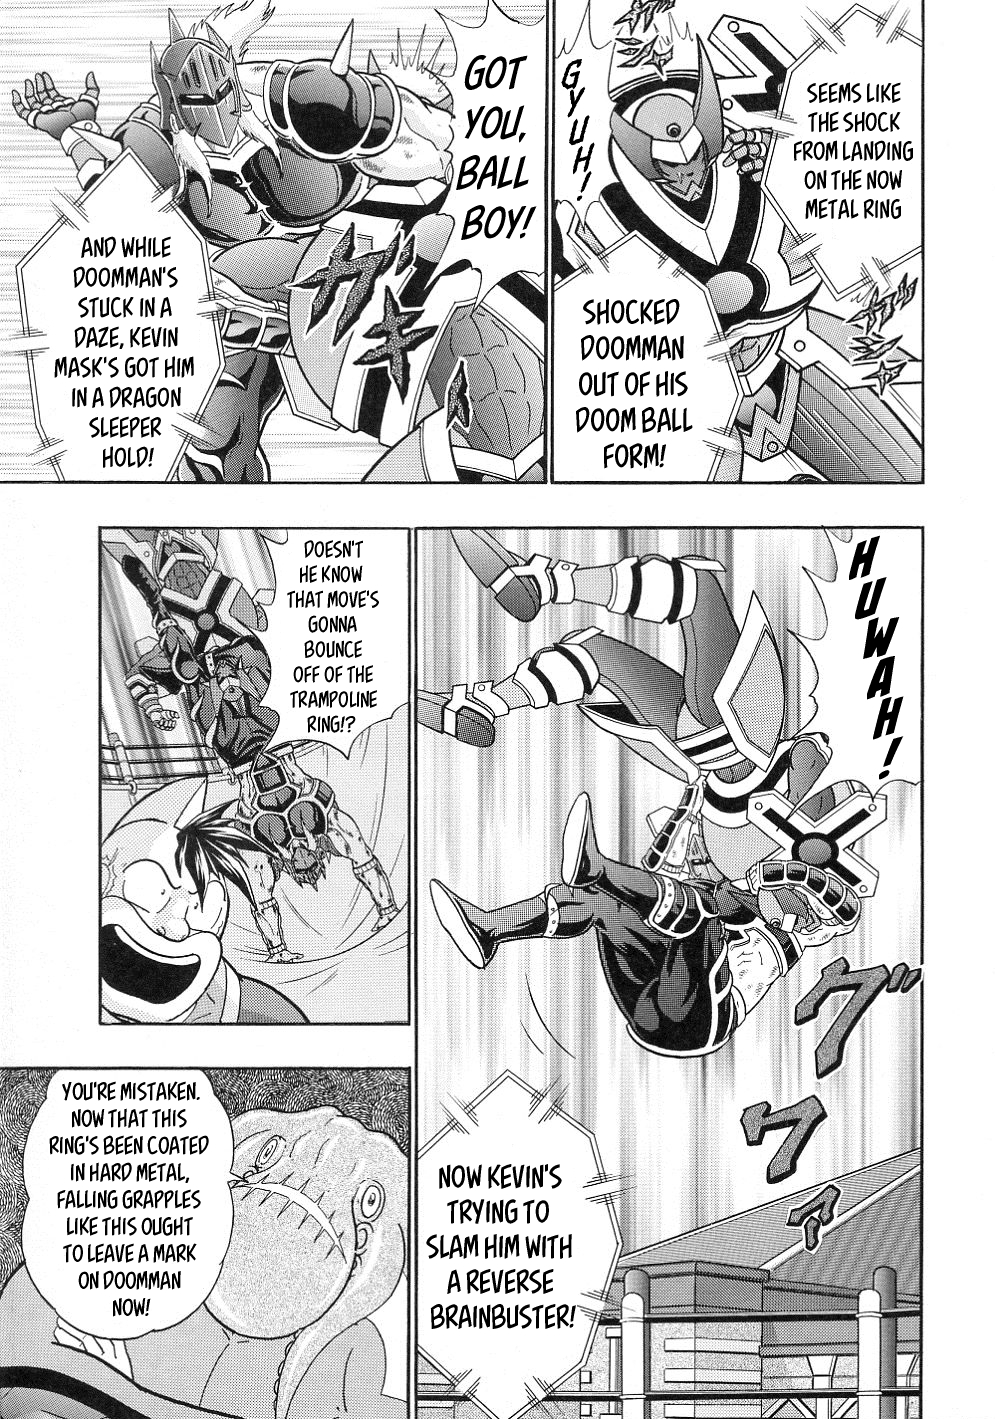 Kinnikuman II Sei: All Choujin Daishingeki Vol. 3 Ch. 37 Bring Out The Pride Of The Robin Family!